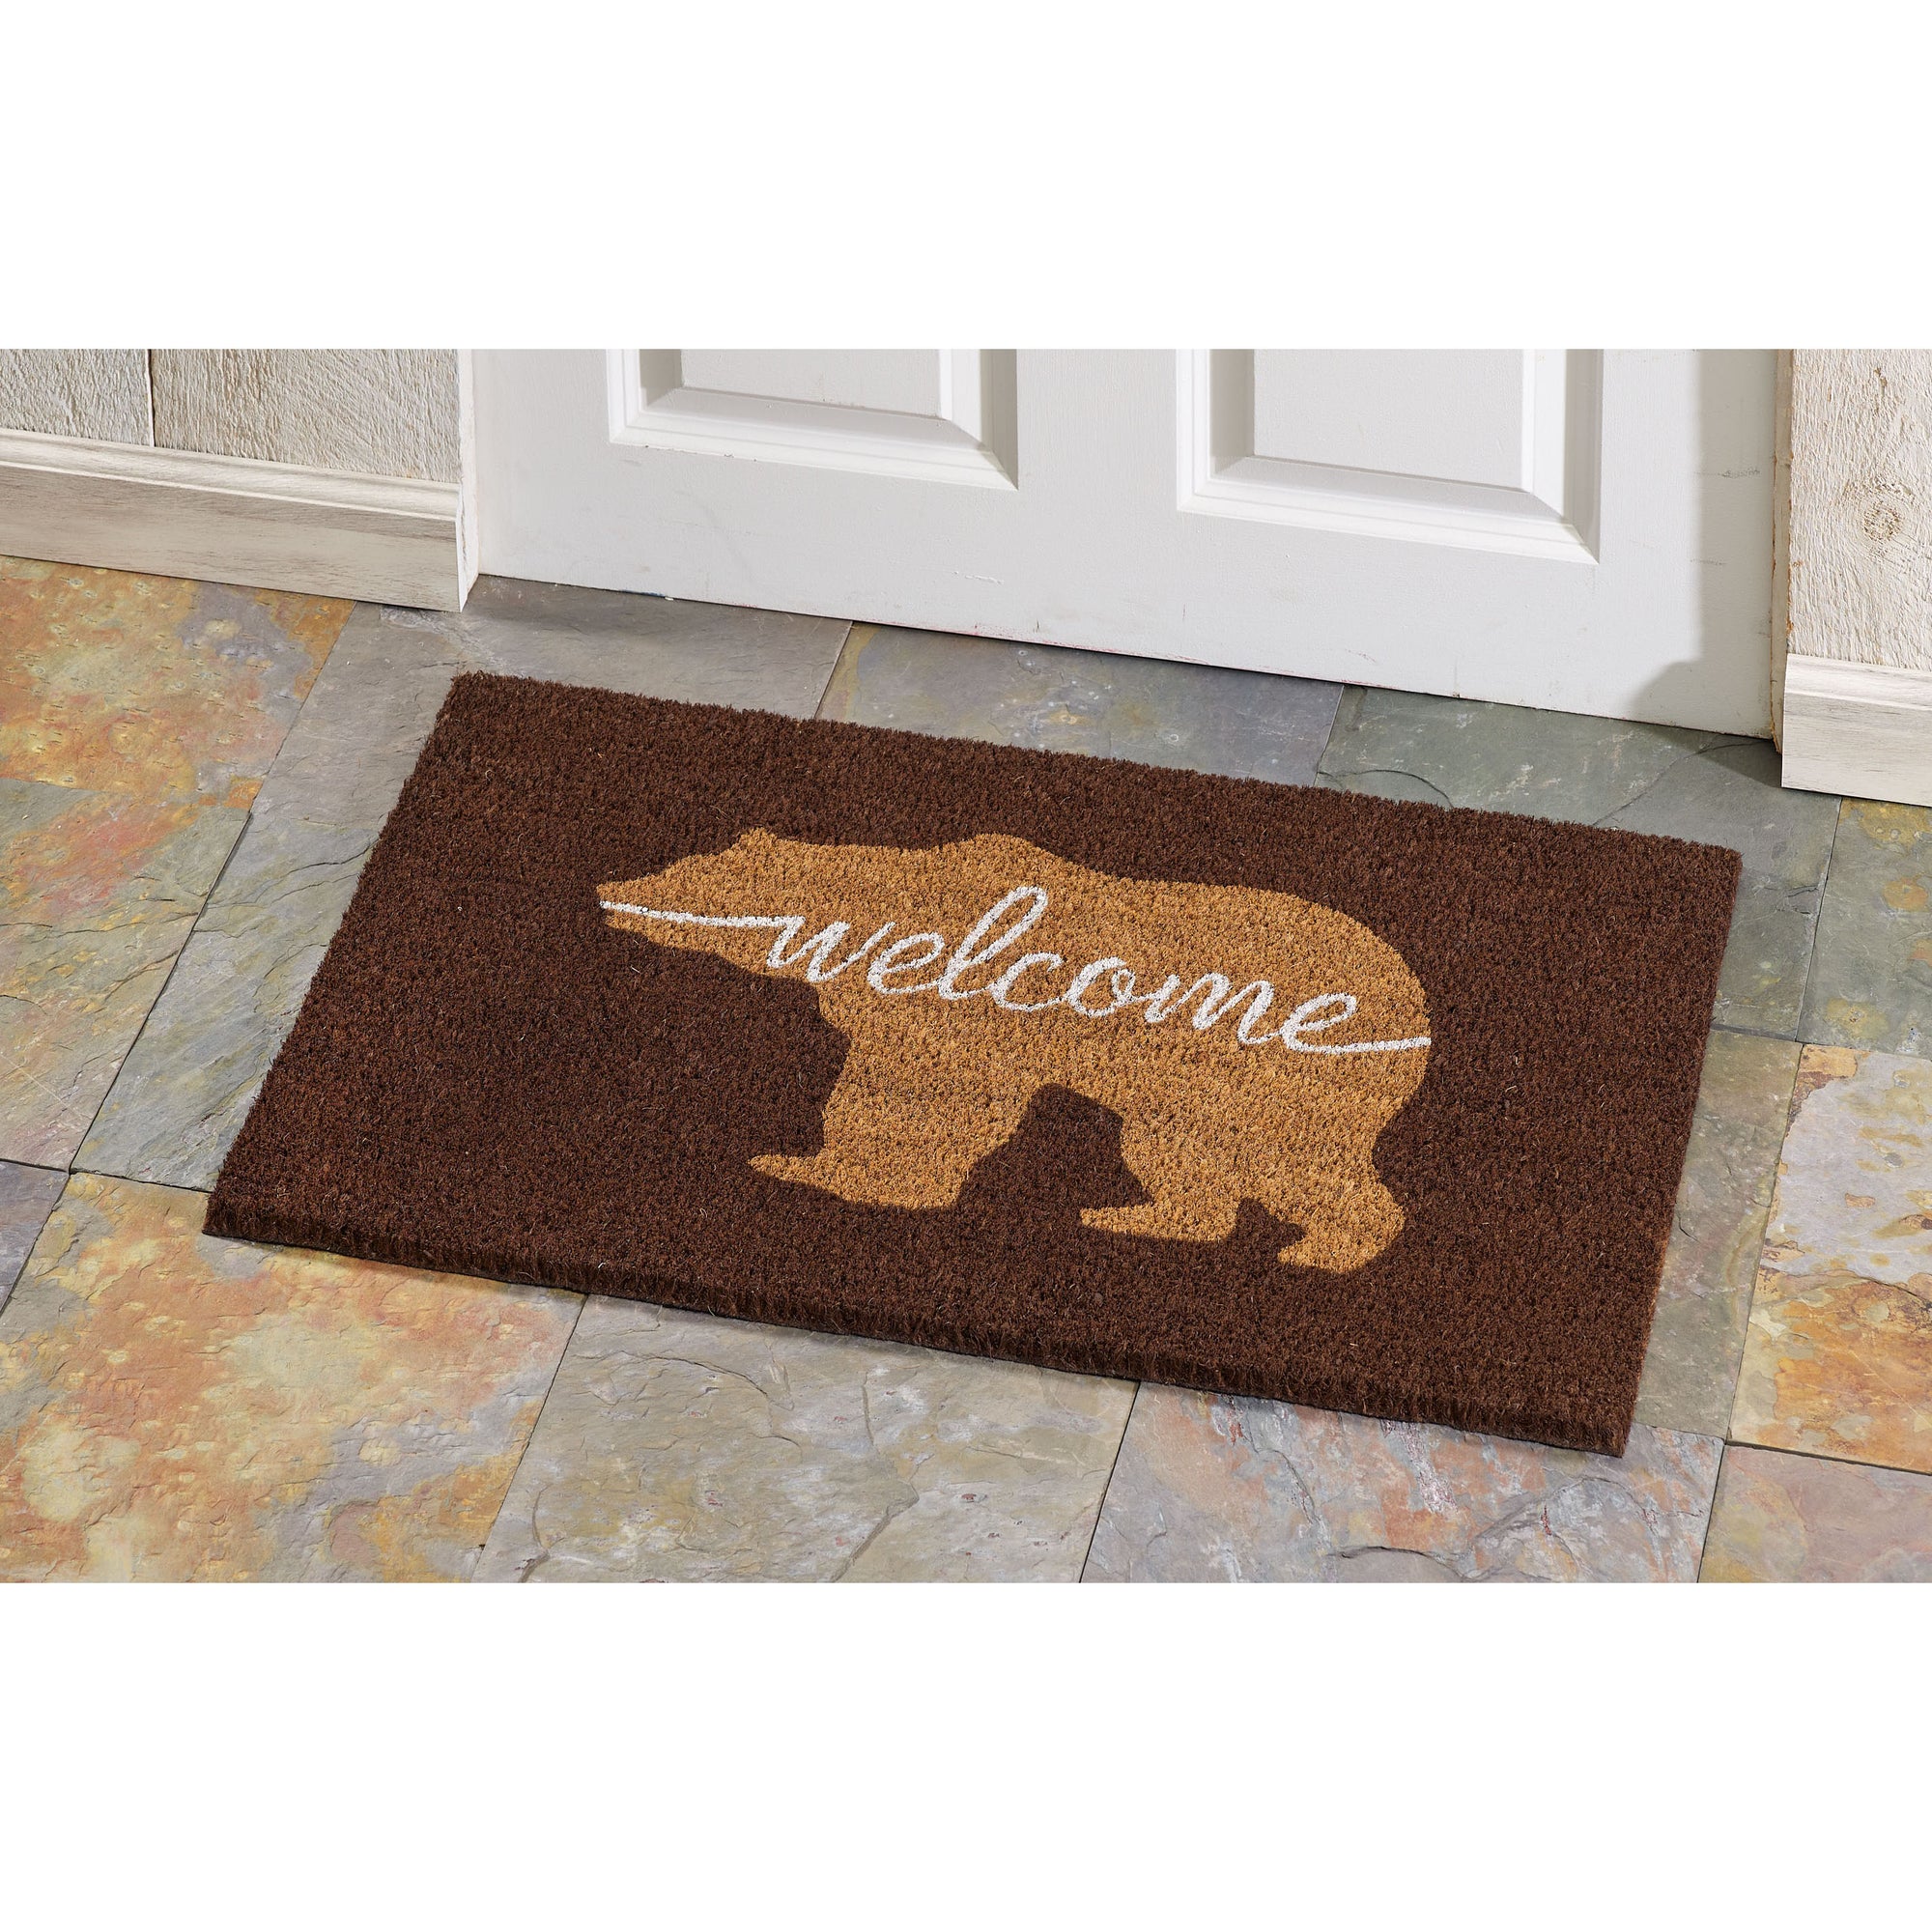 Bear Welcome Doormat